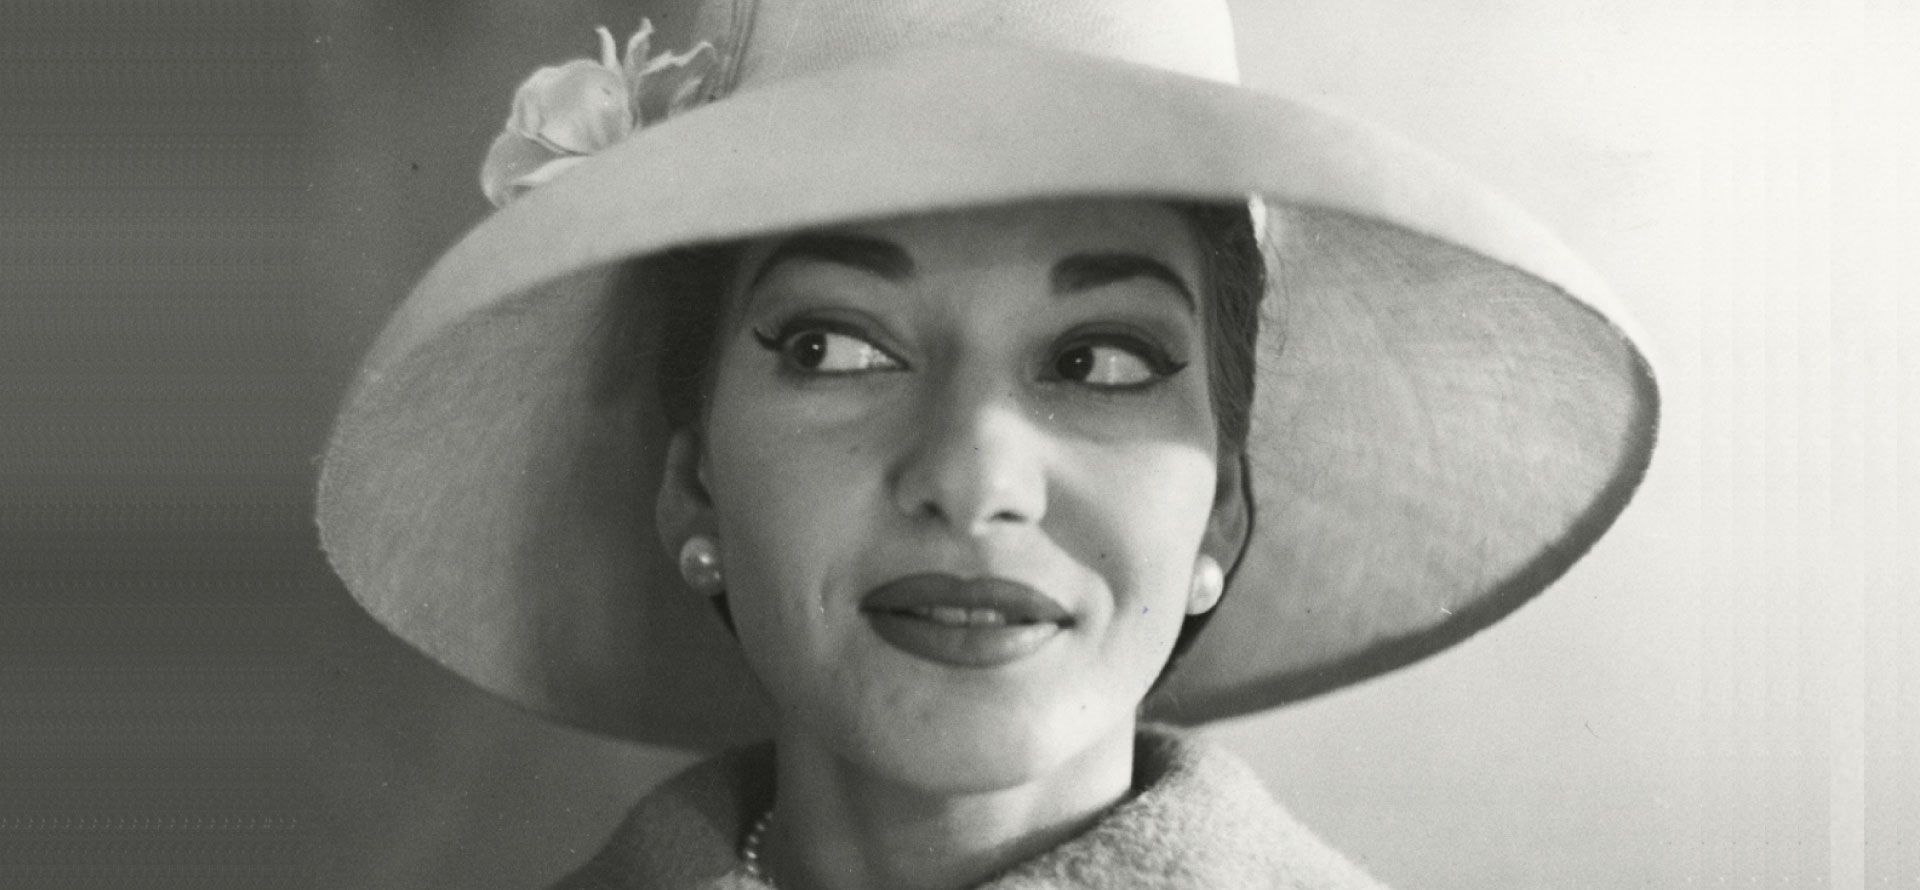 Maria Callas. Ritratti dall’Archivio Publifoto Intesa Sanpaolo